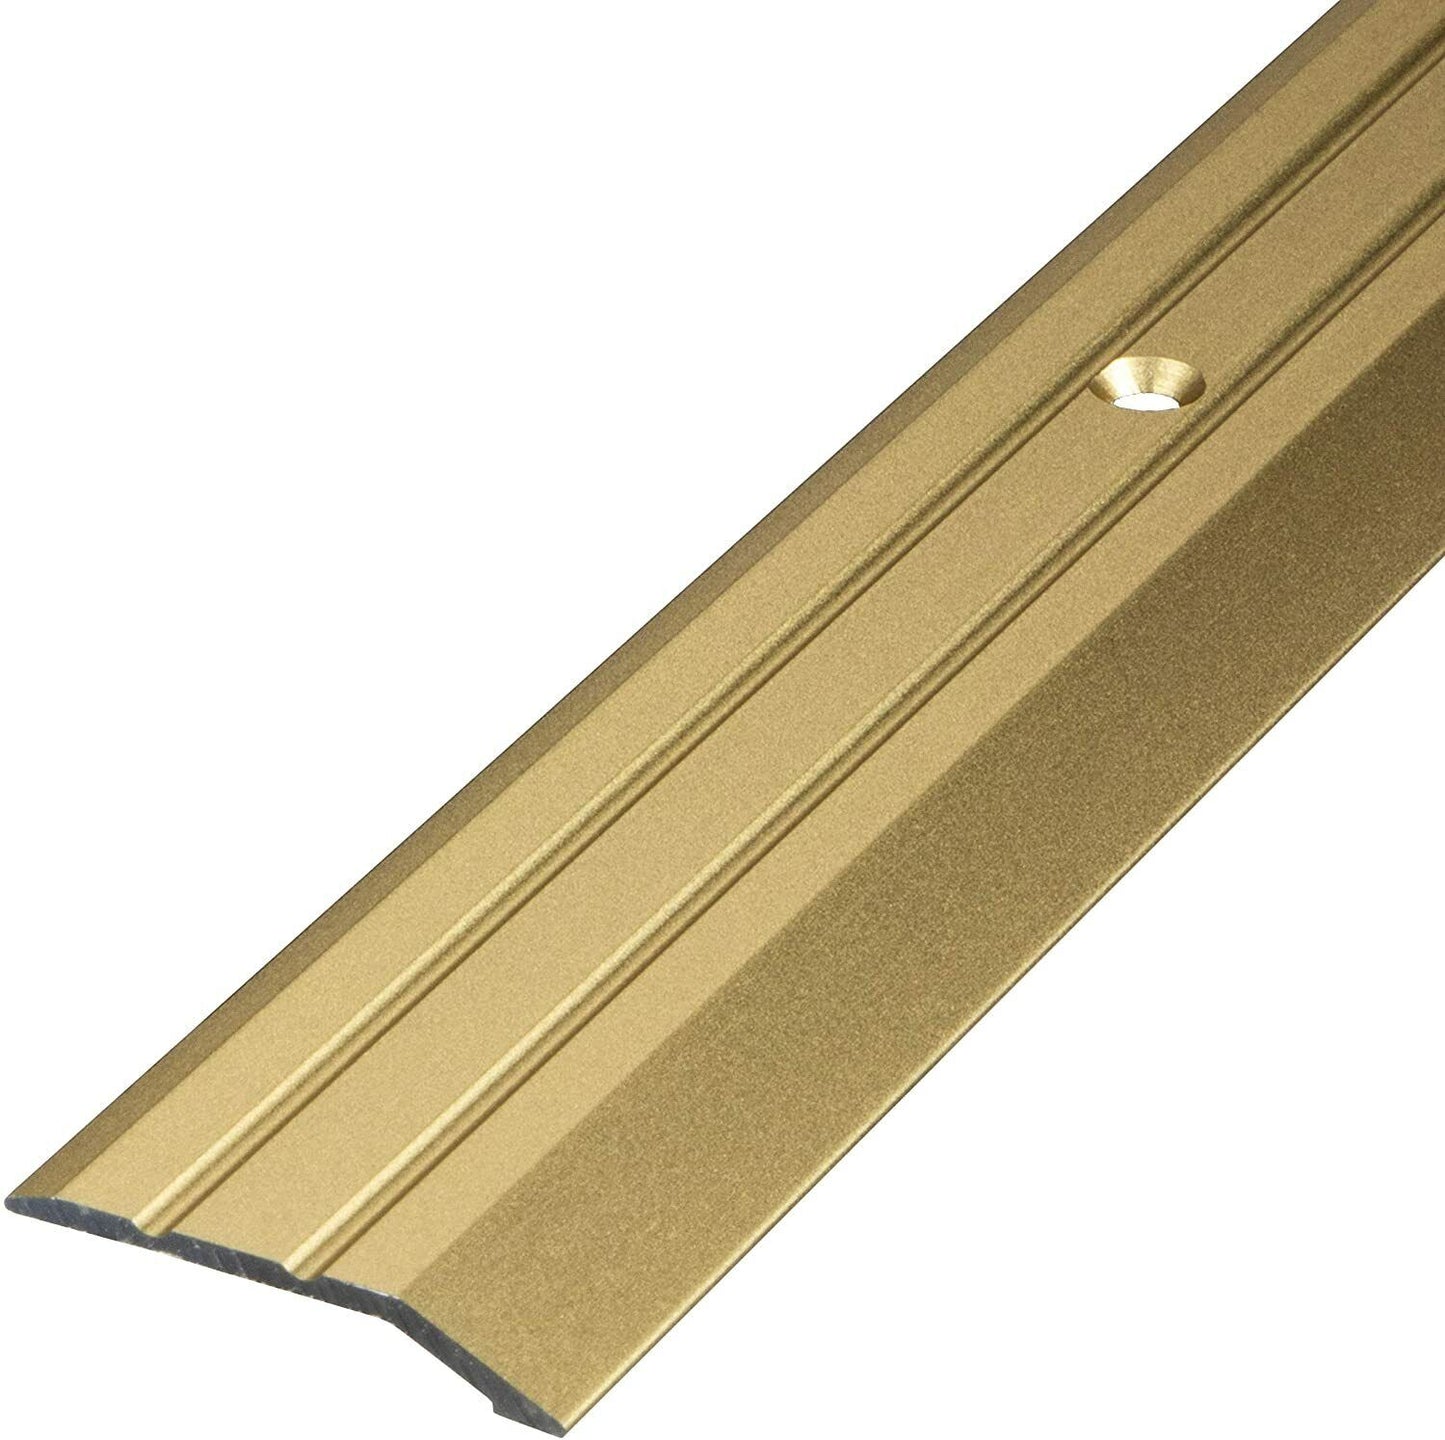 Profilo livello coprisoglia pavimenti alluminio forato inclusi viti e tasselli